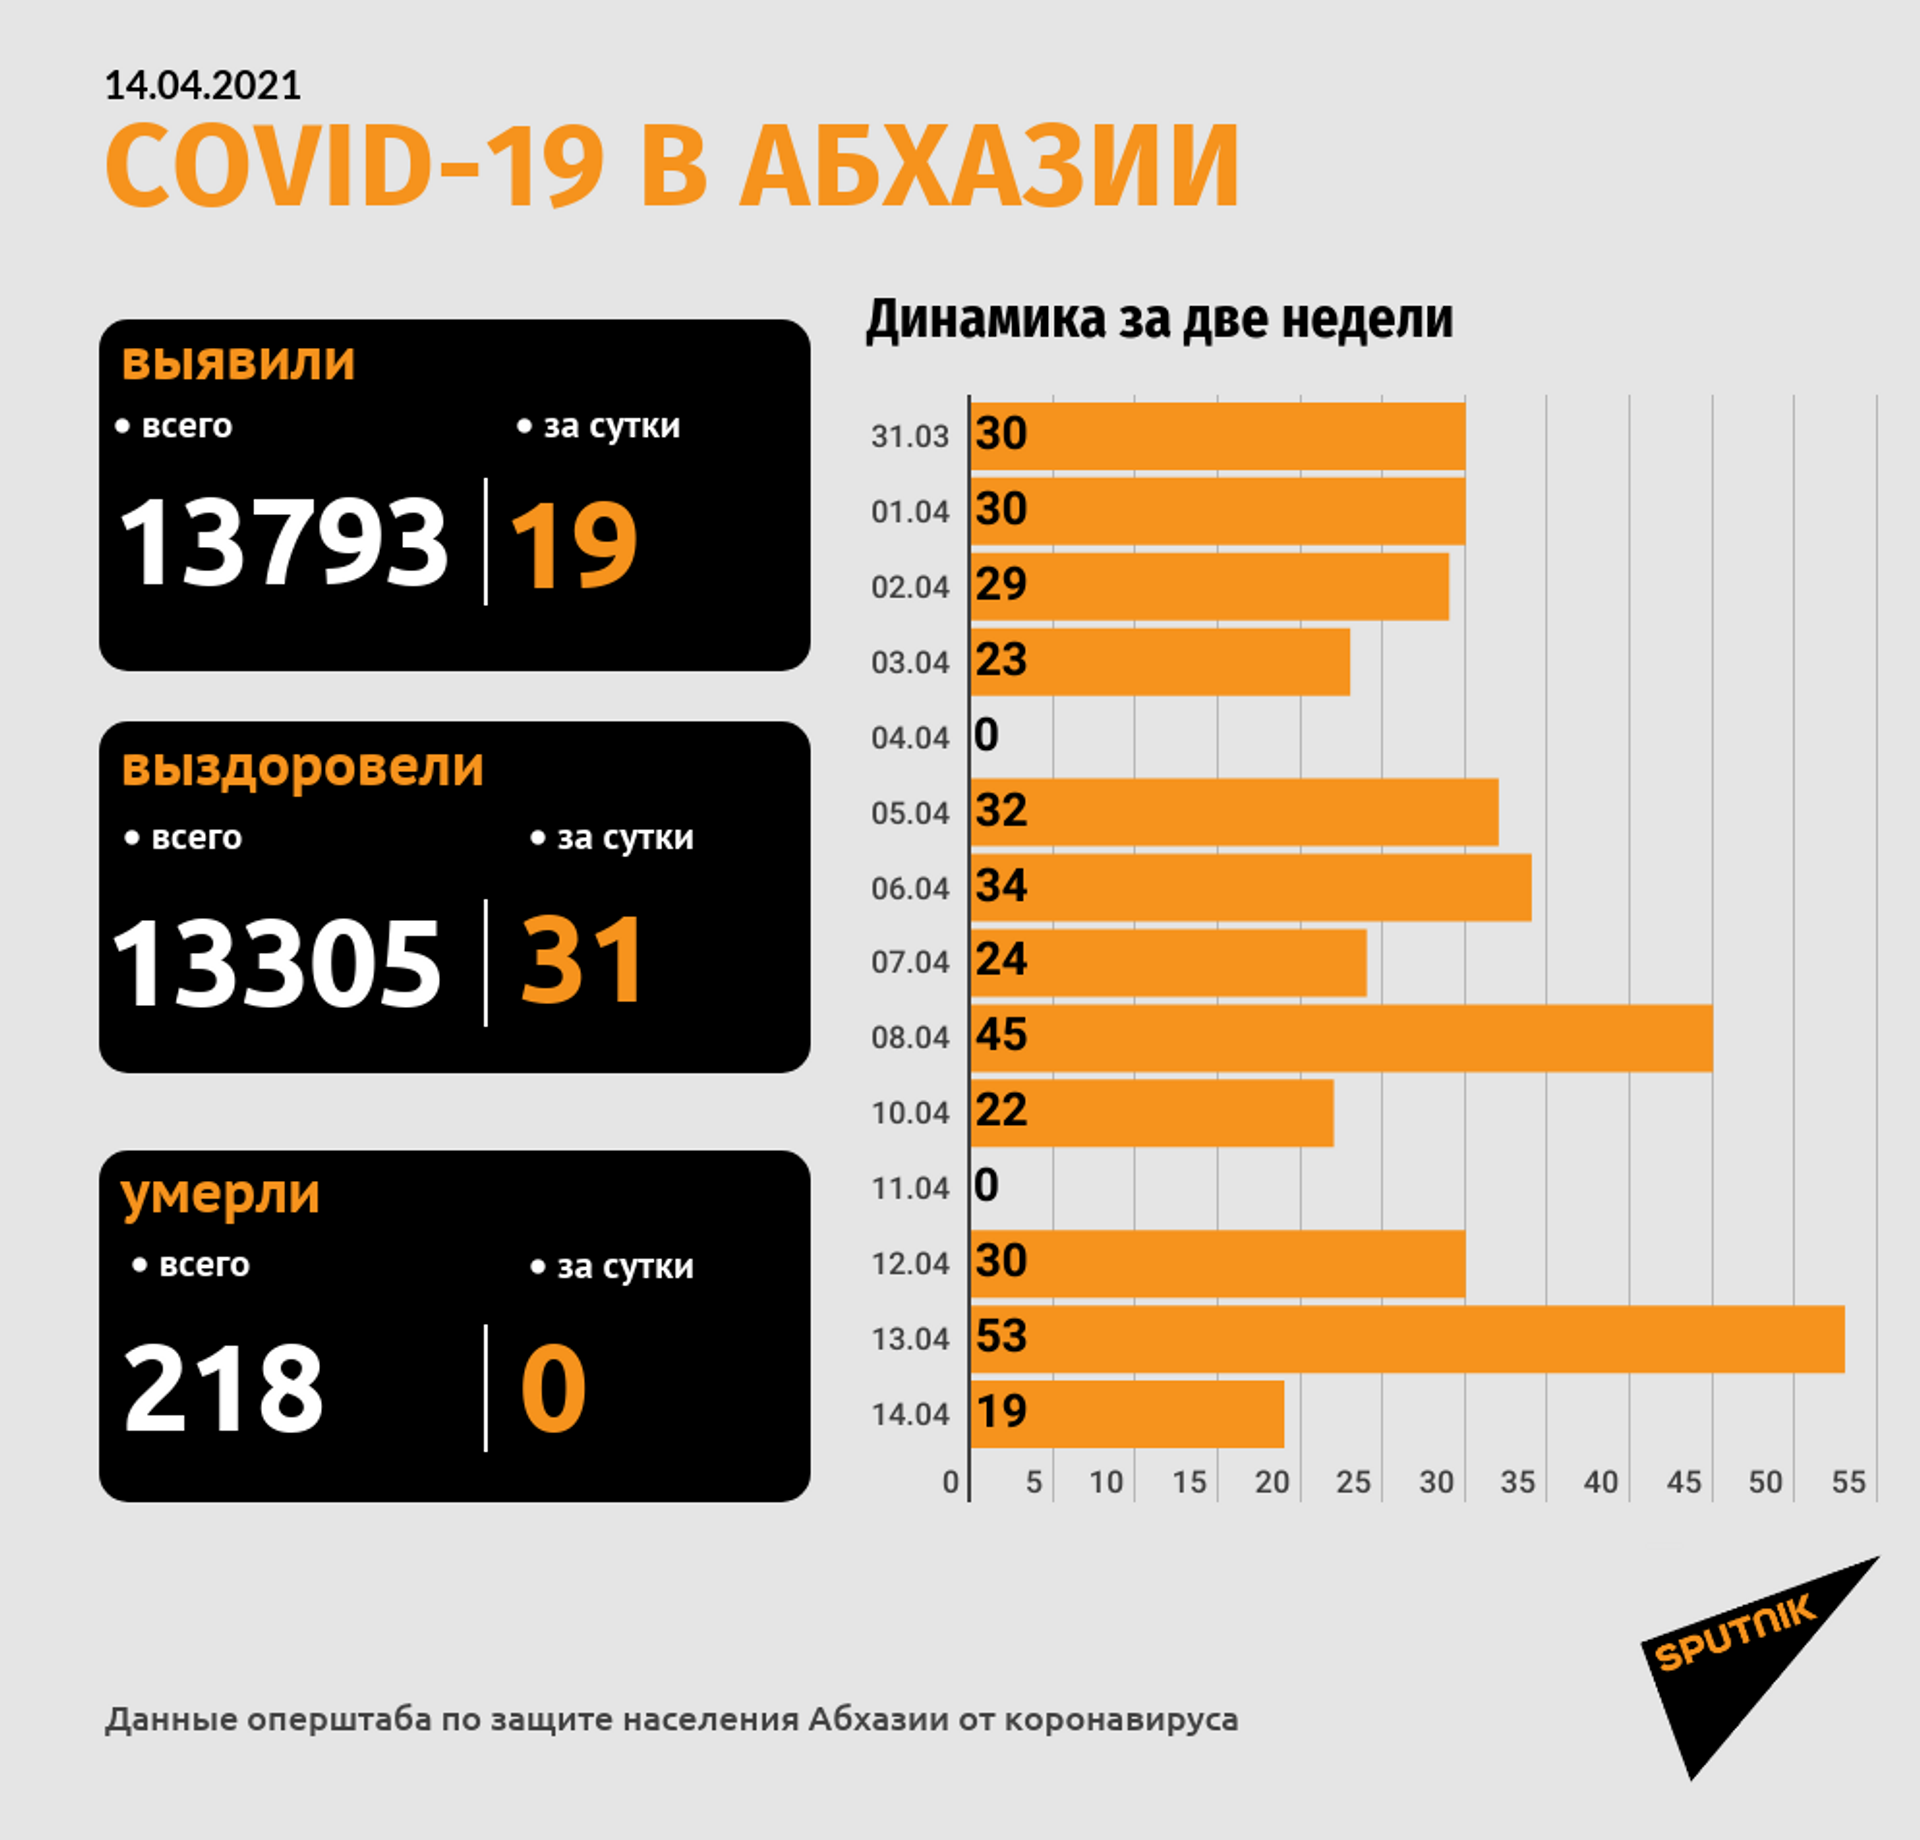 Еще 19 новых случаев COVID-19 зафиксировано в Абхазии за сутки - Sputnik Абхазия, 1920, 14.04.2021